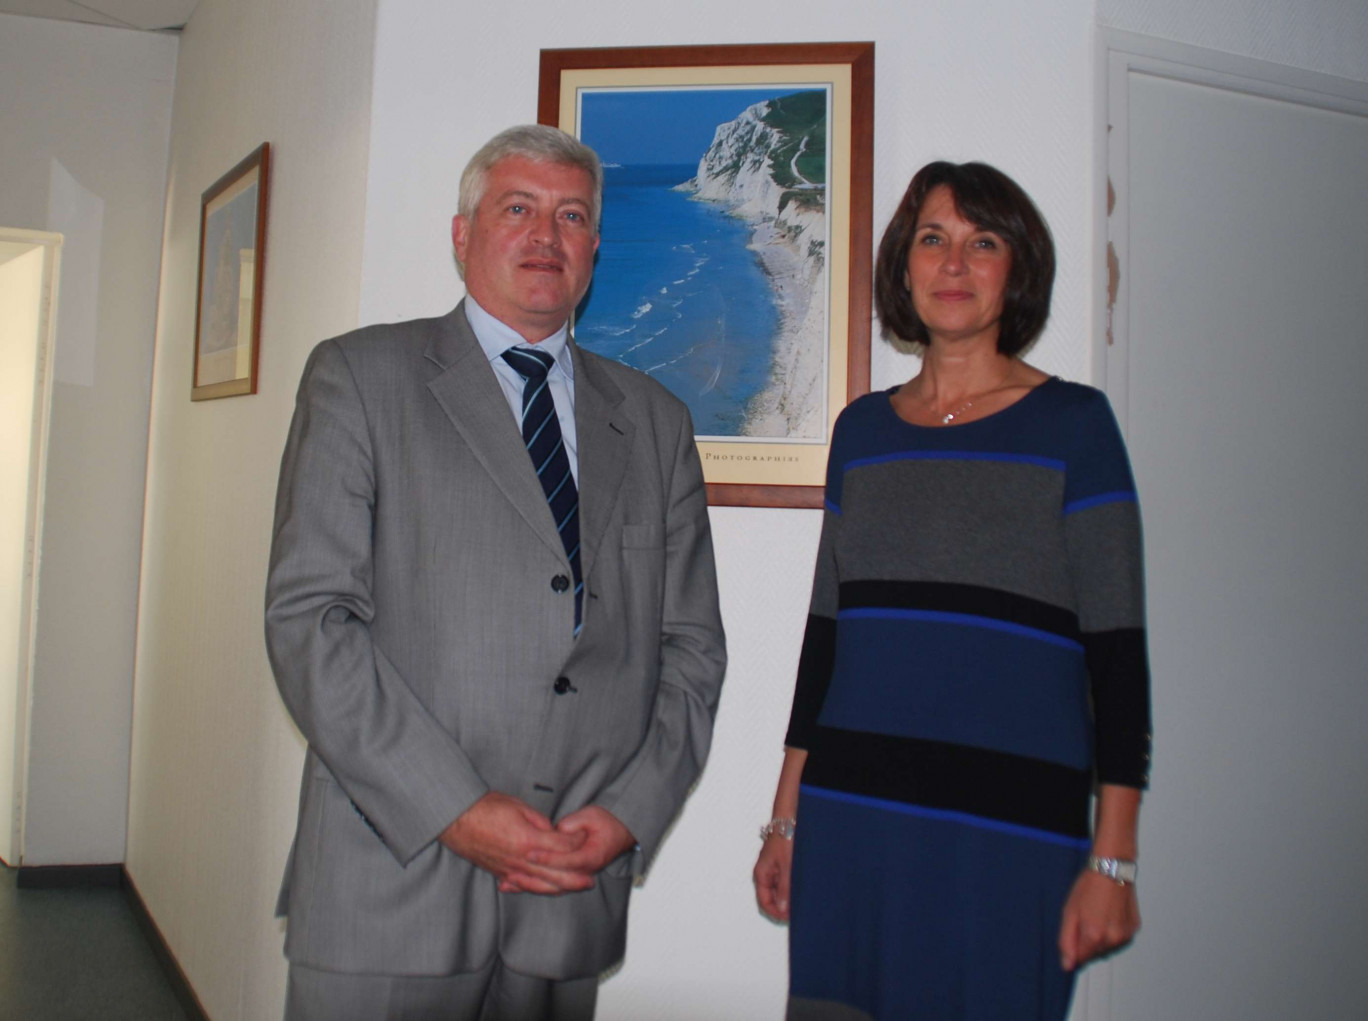 Diana Hounslow, directrice, et Bertrand Petit, président de l'Agence de développement et de réservation touristiques du Pas-de-Calais.